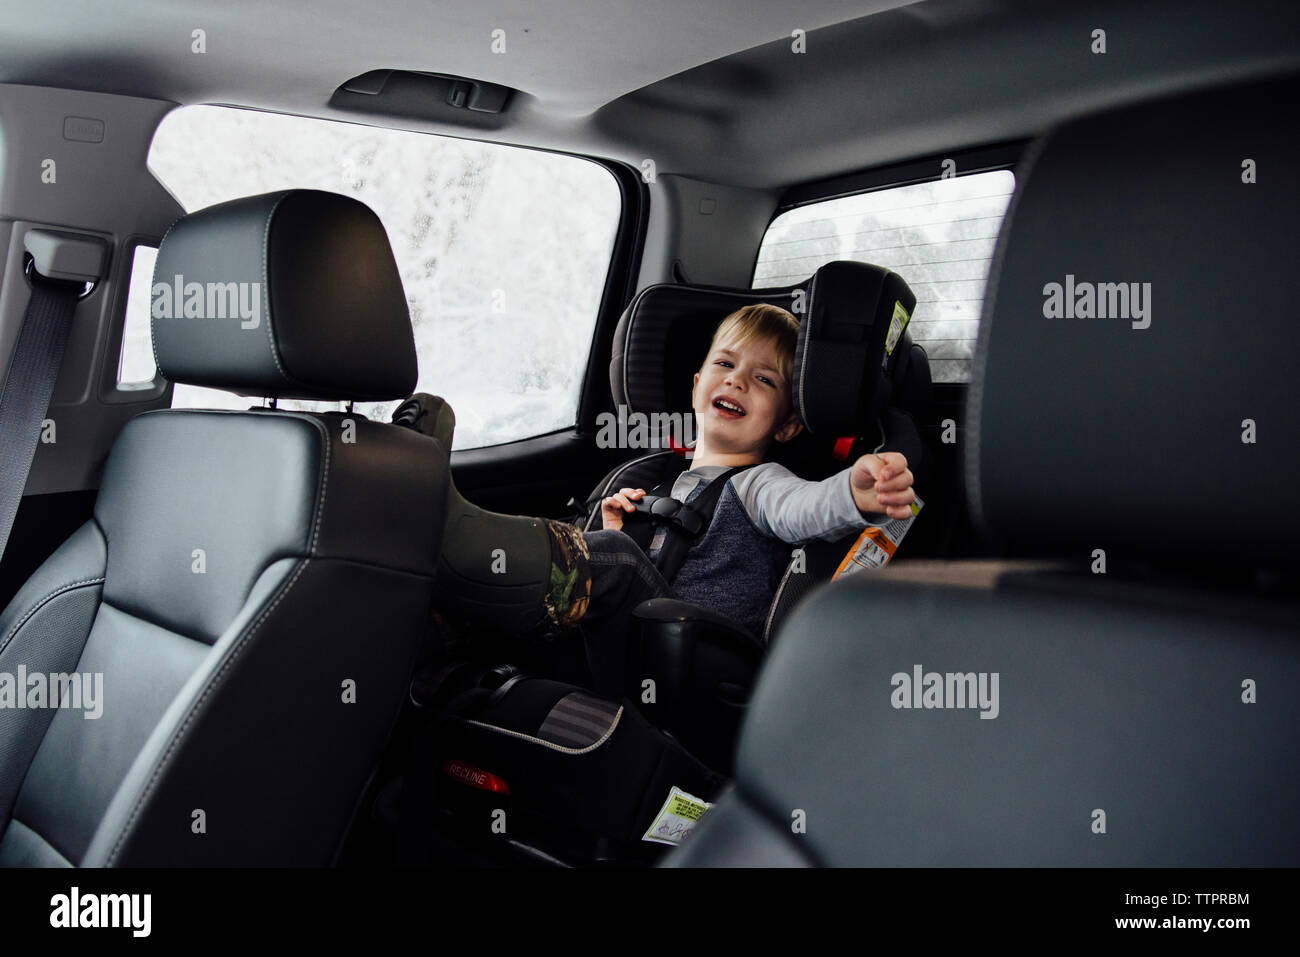 Retrato de niño llorando mientras está sentado en el asiento del vehículo. Foto de stock